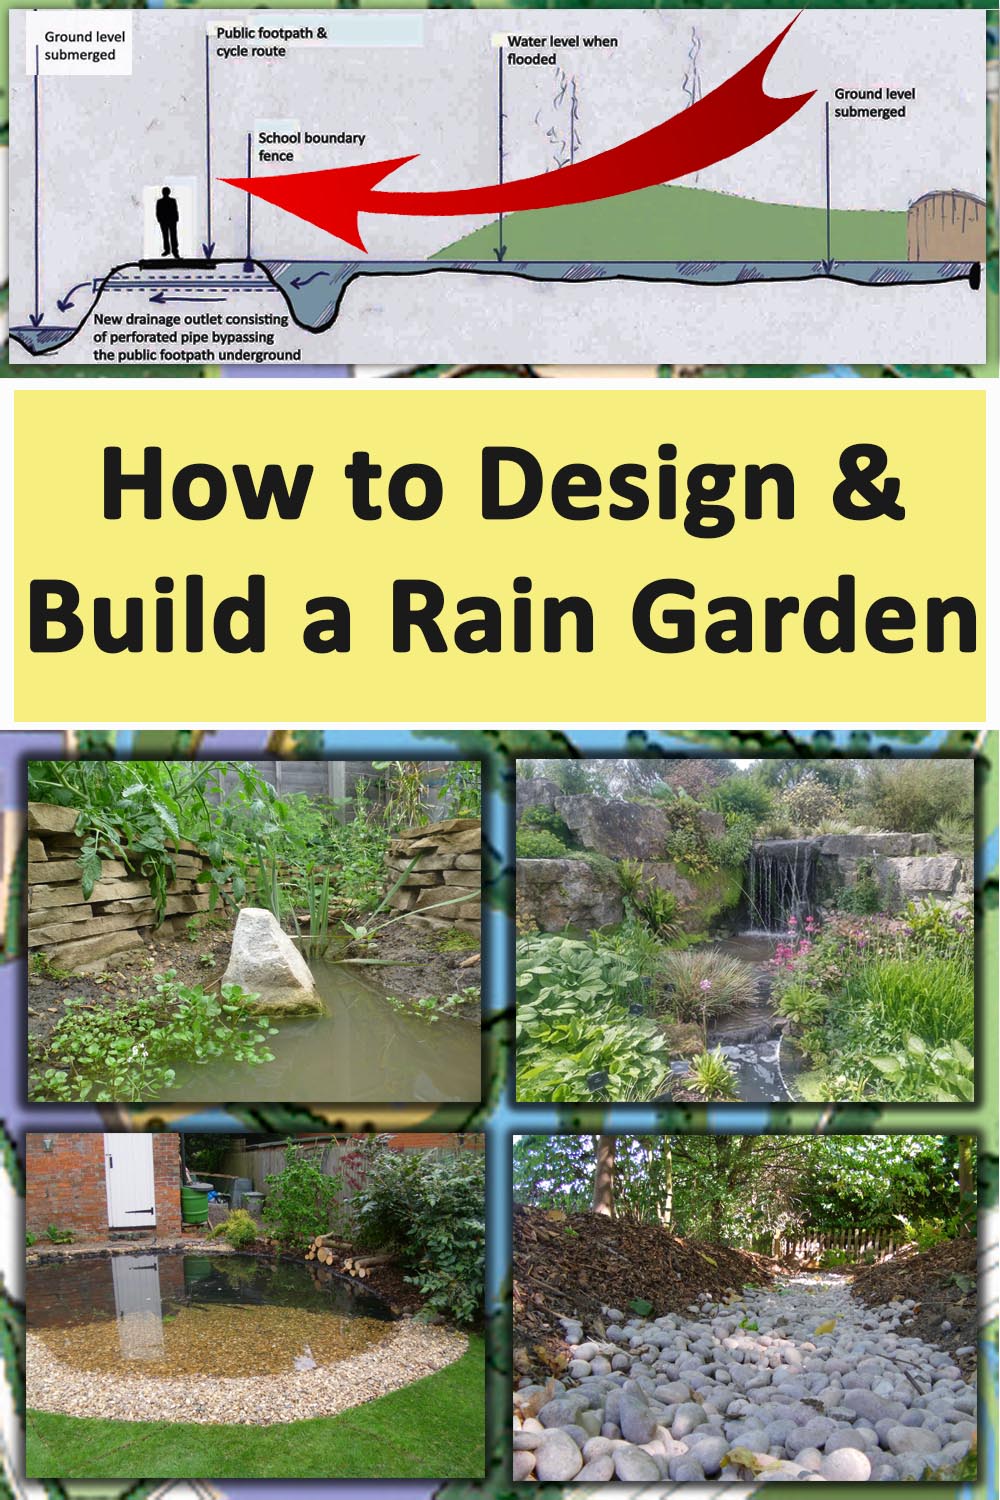 How to make a rain garden